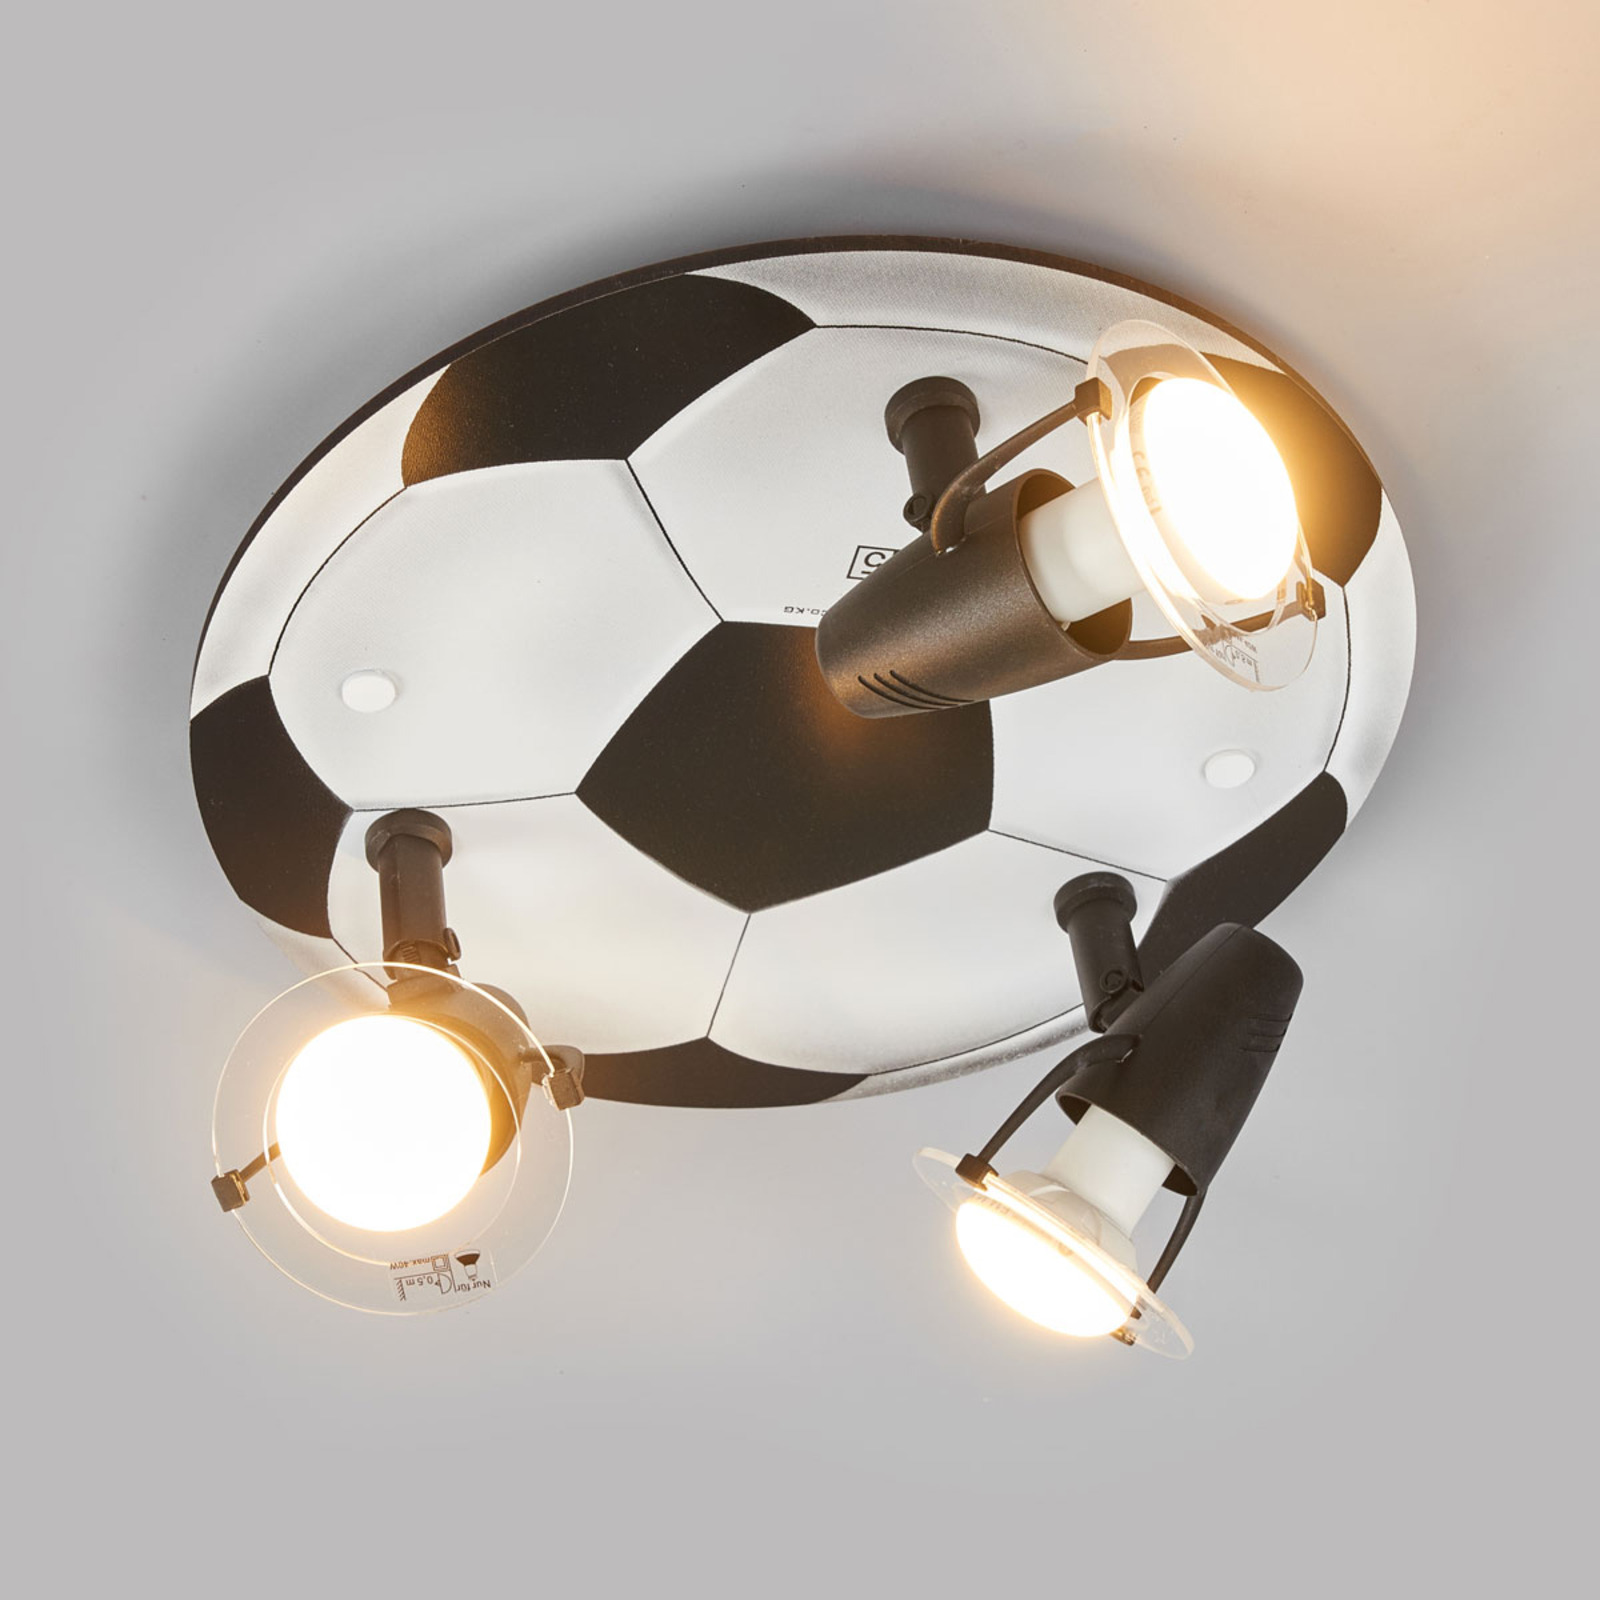 ALEXANDRA plafondlamp FUSSBALL, 3-lichts